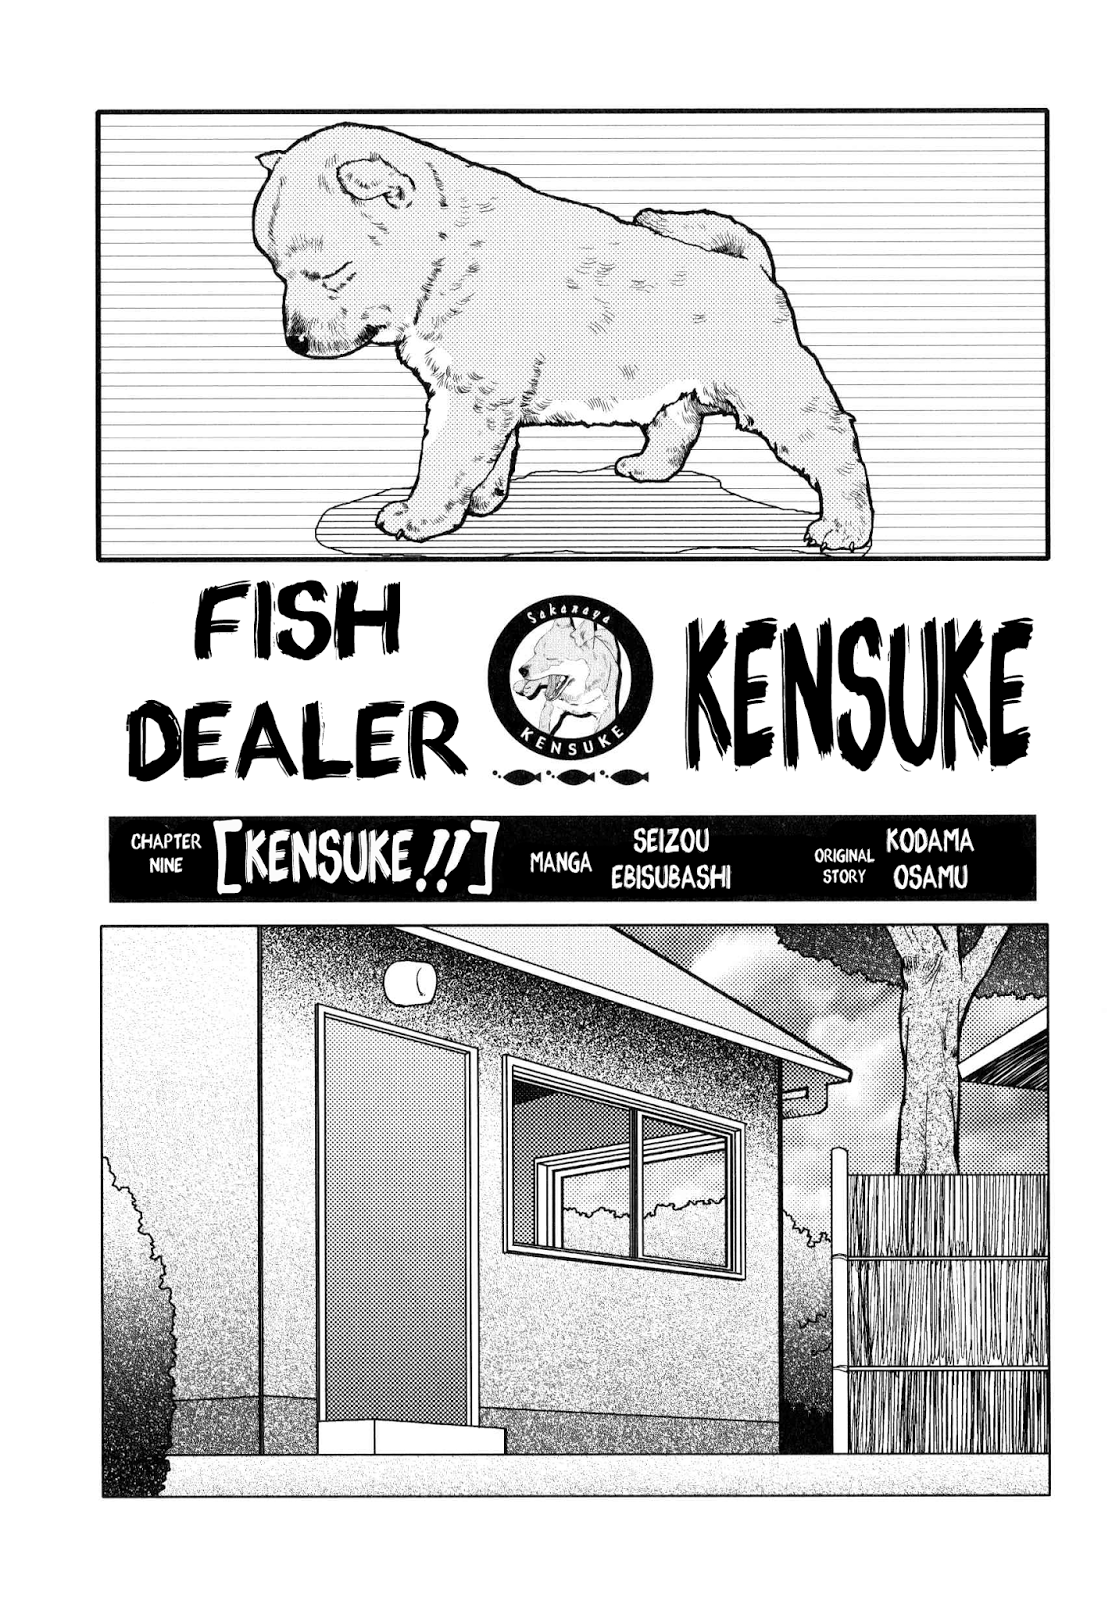 Seizou Ebisubashi Fish Dealer Kensuke 09